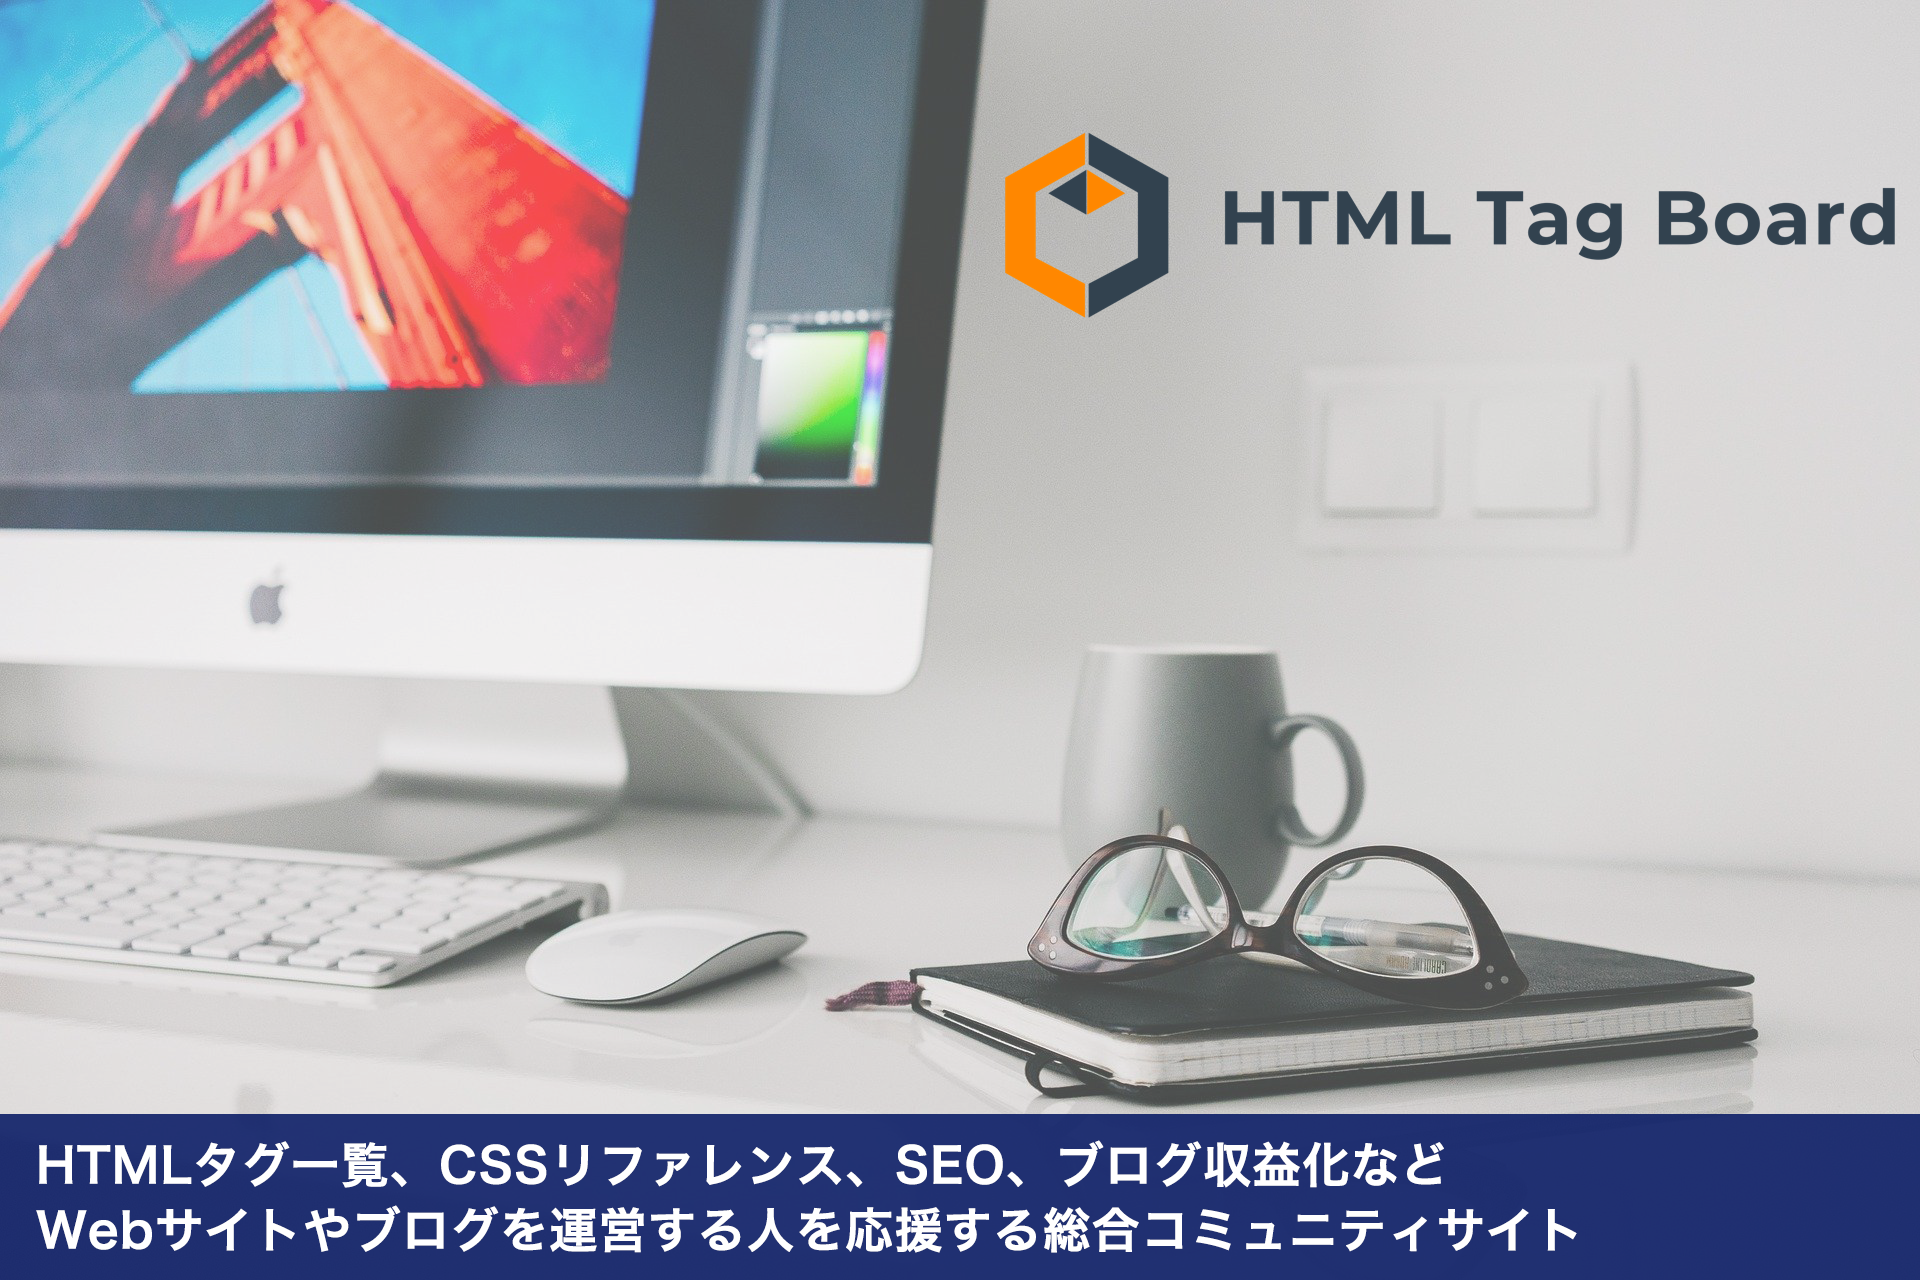 Htmlタグ一覧 Cssリファレンス Seo ブログ収益化などwebサイトやブログを運営する人を応援する総合コミュニティサイト Htmlタグボード